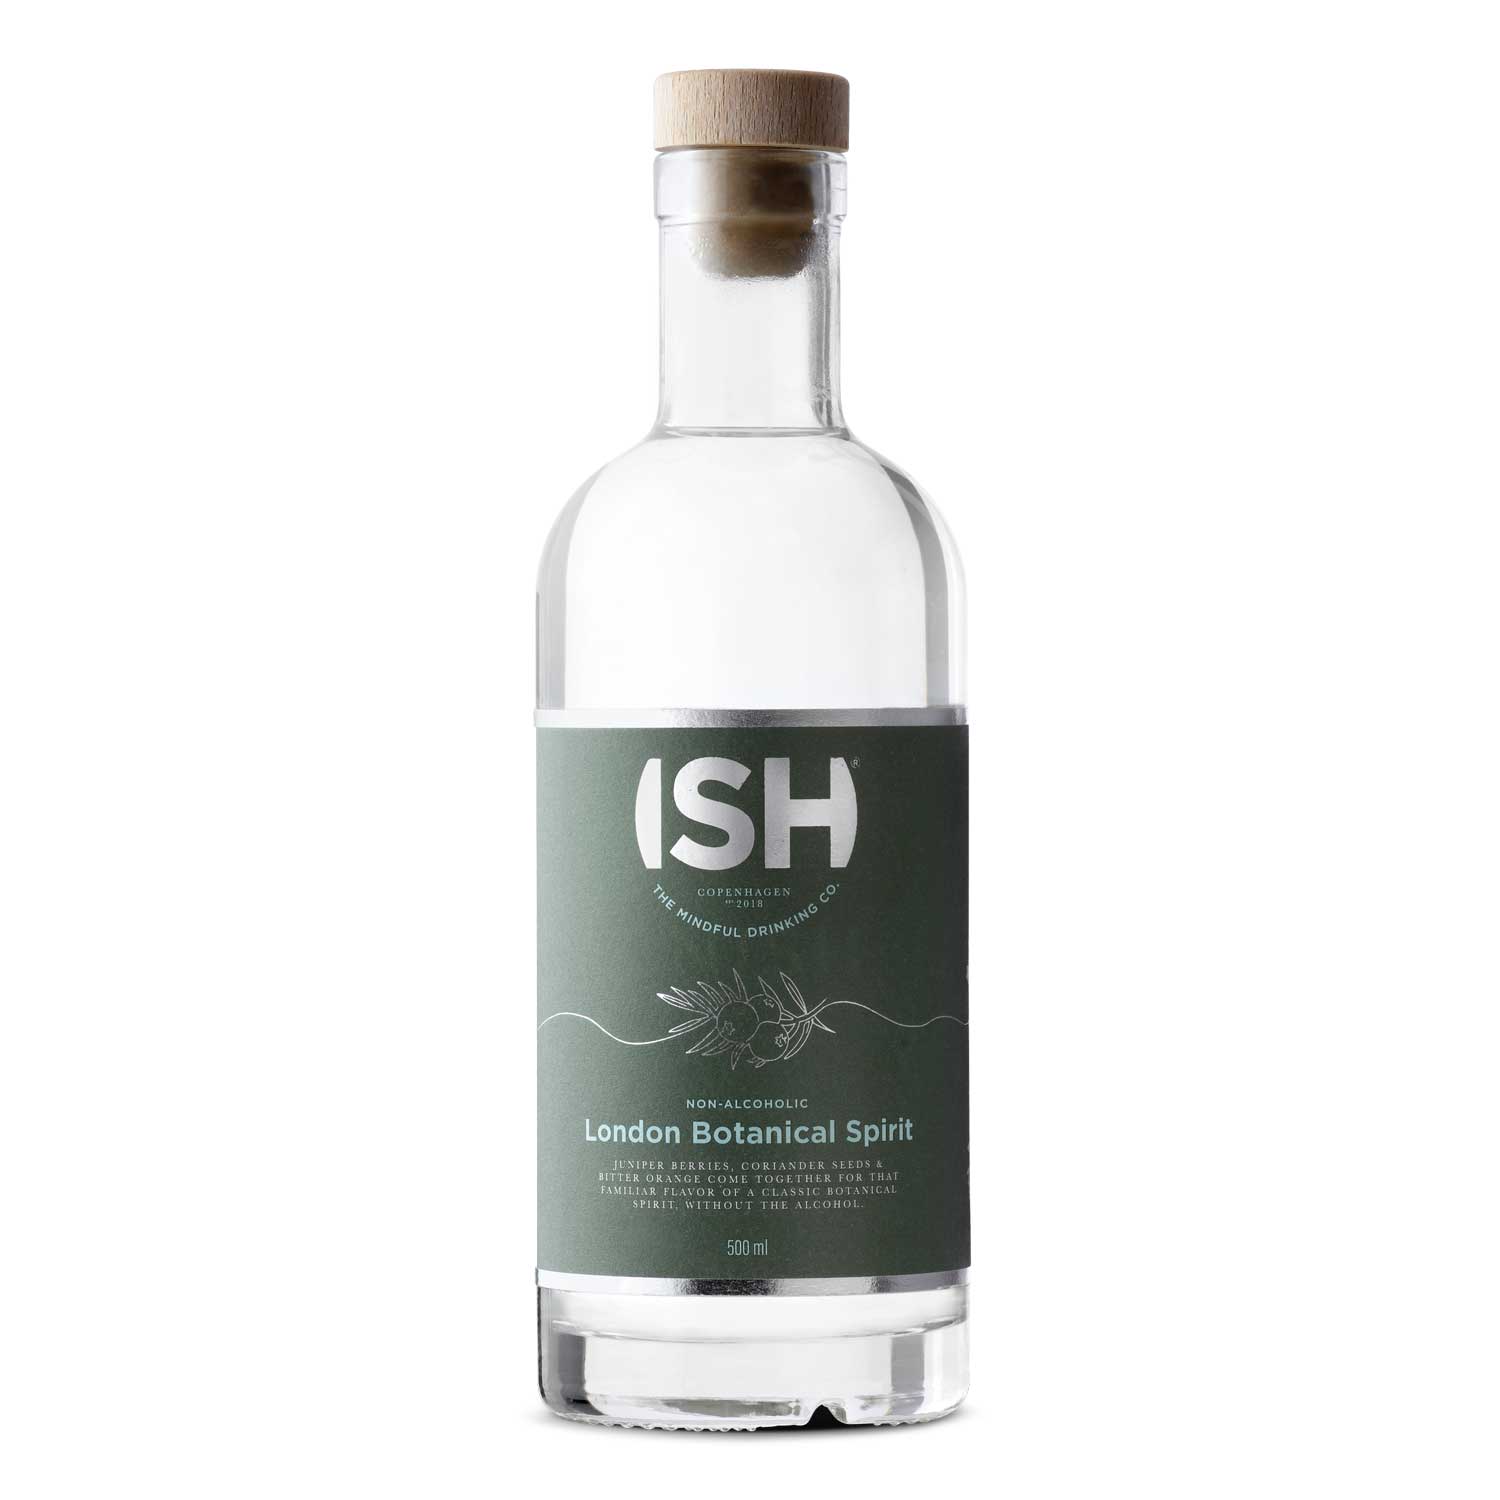 Non-alcoholic Gin, London Botanical Spirit, 500 ml